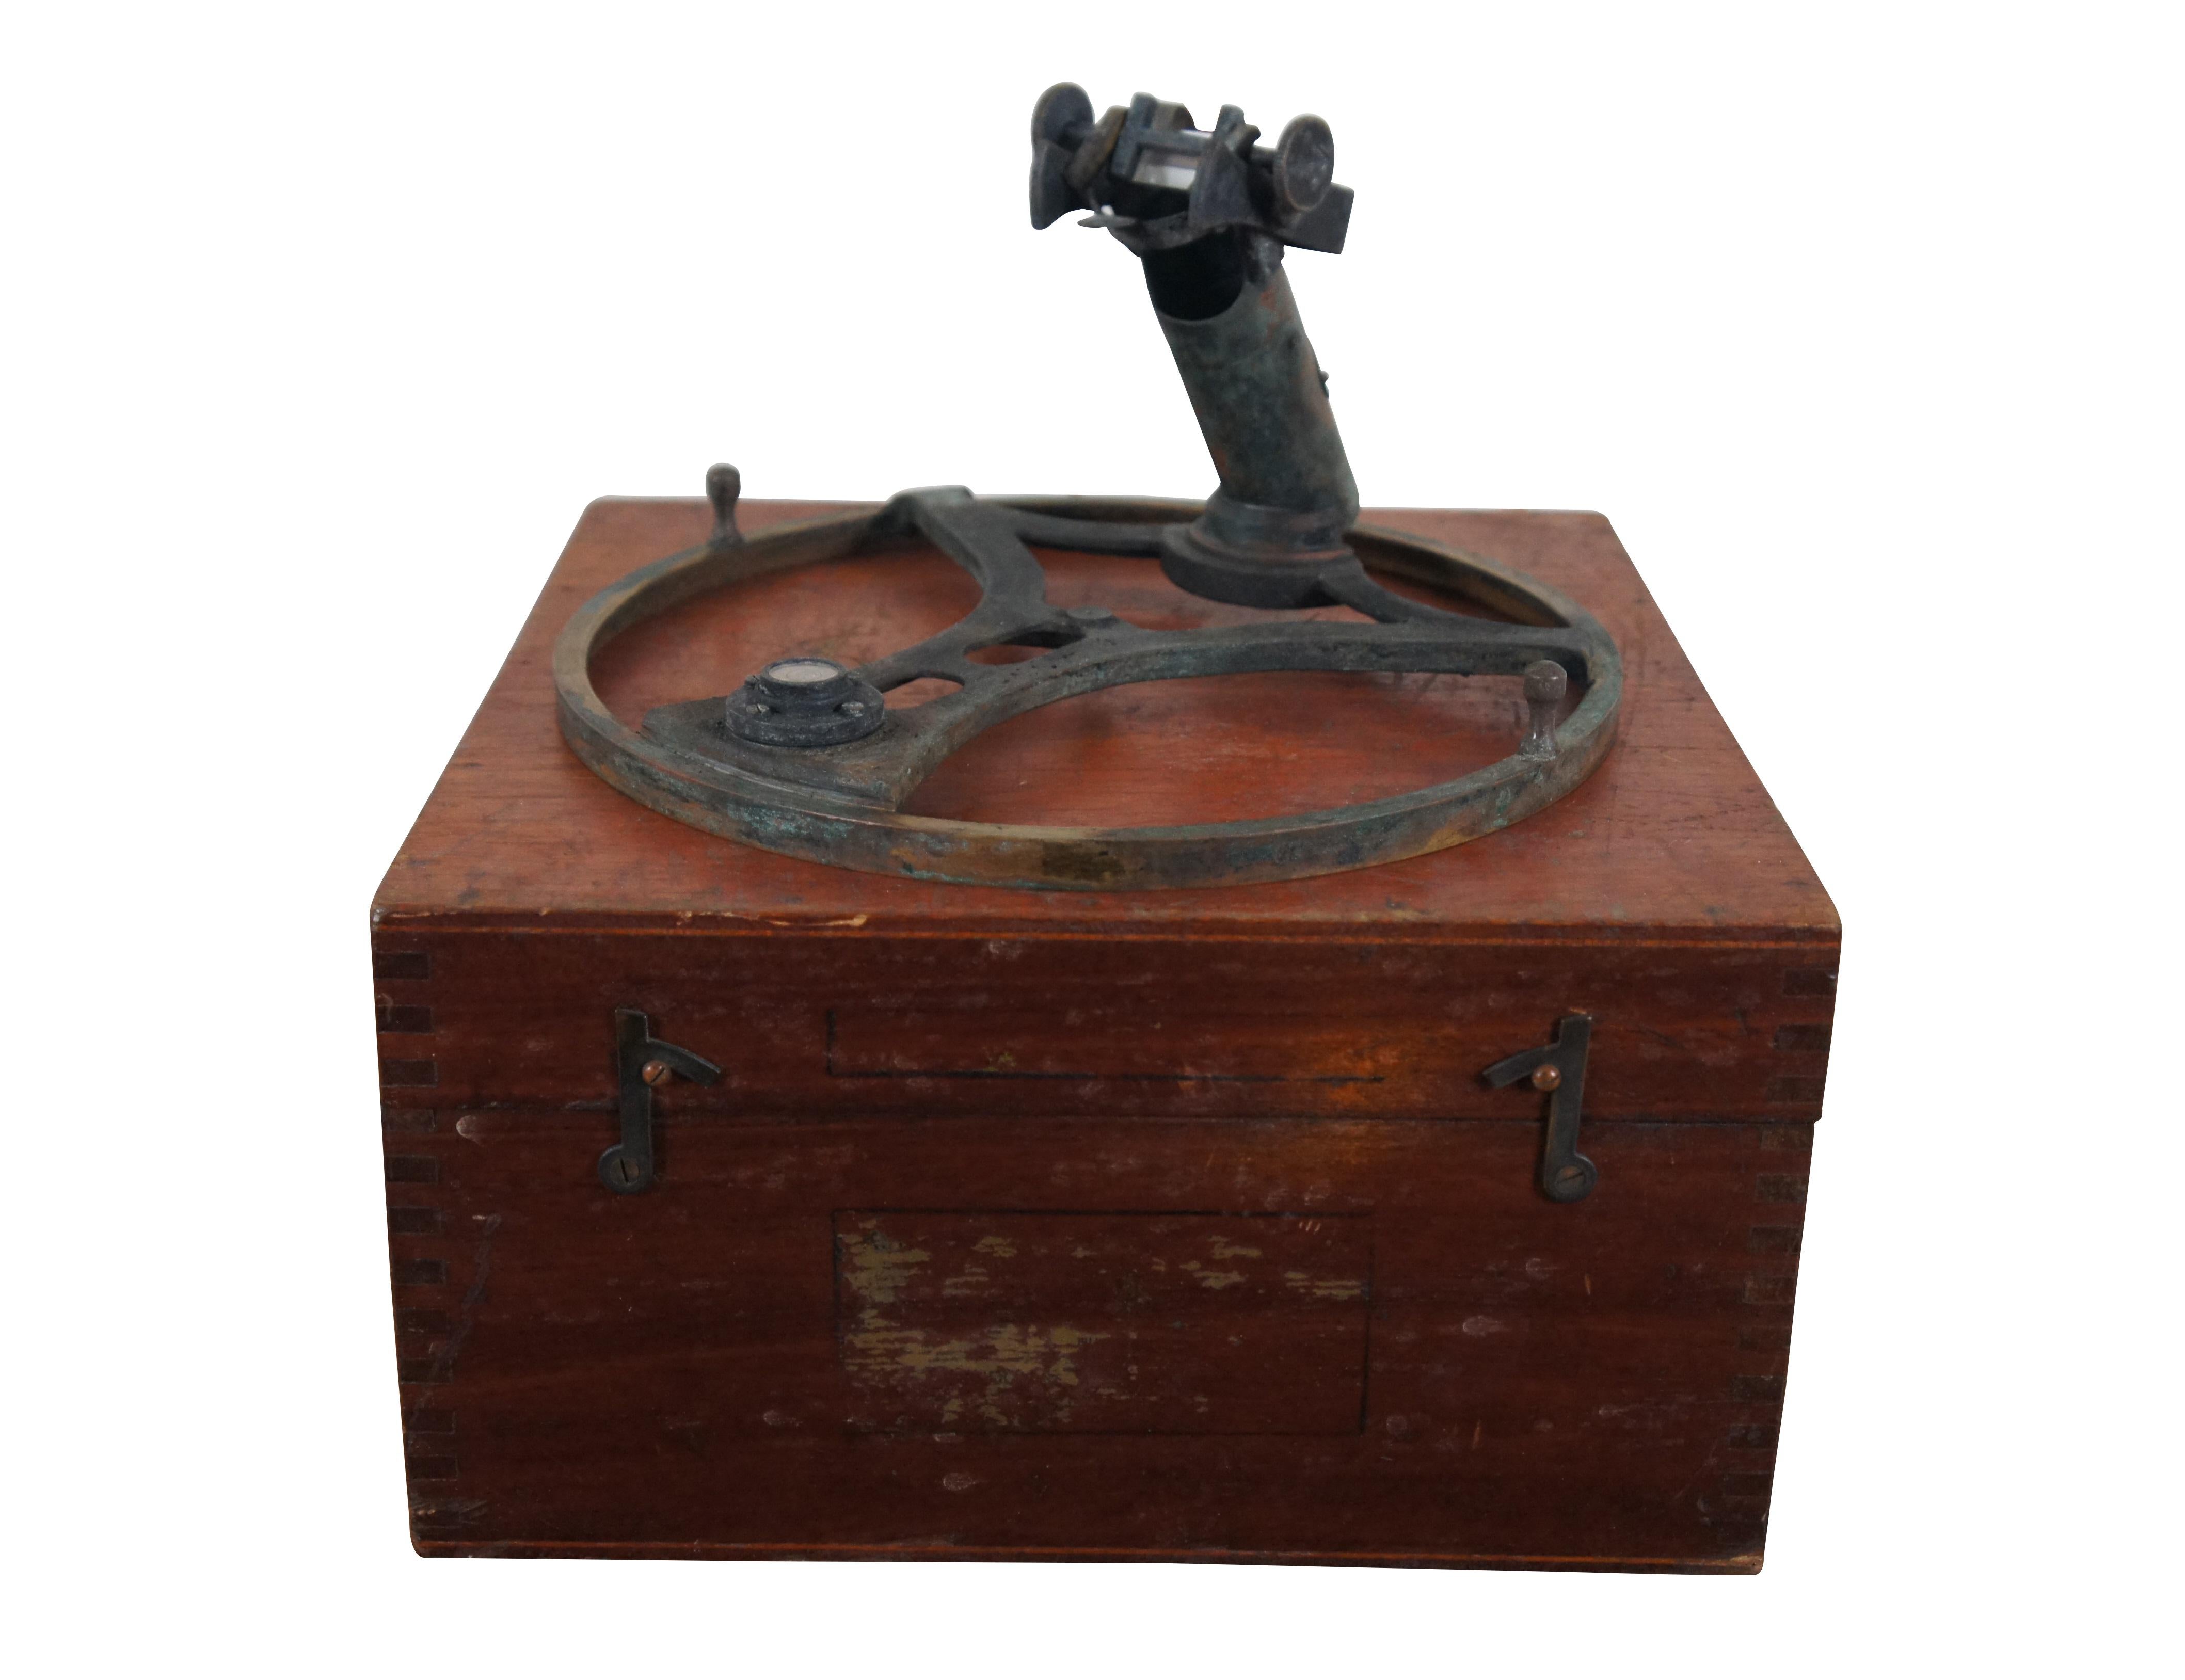 Lord Kelvins Azimutspiegel und schwalbenschwanzförmiger Holzkoffer zur Aufbewahrung. Hergestellt von Kelvin, Bottomly & Baird Ltd. für Marine Instruments Ltd. CIRCA-30er Jahre.  Hergestellt in Großbritannien.

Ein Azimutalkreis ist ein